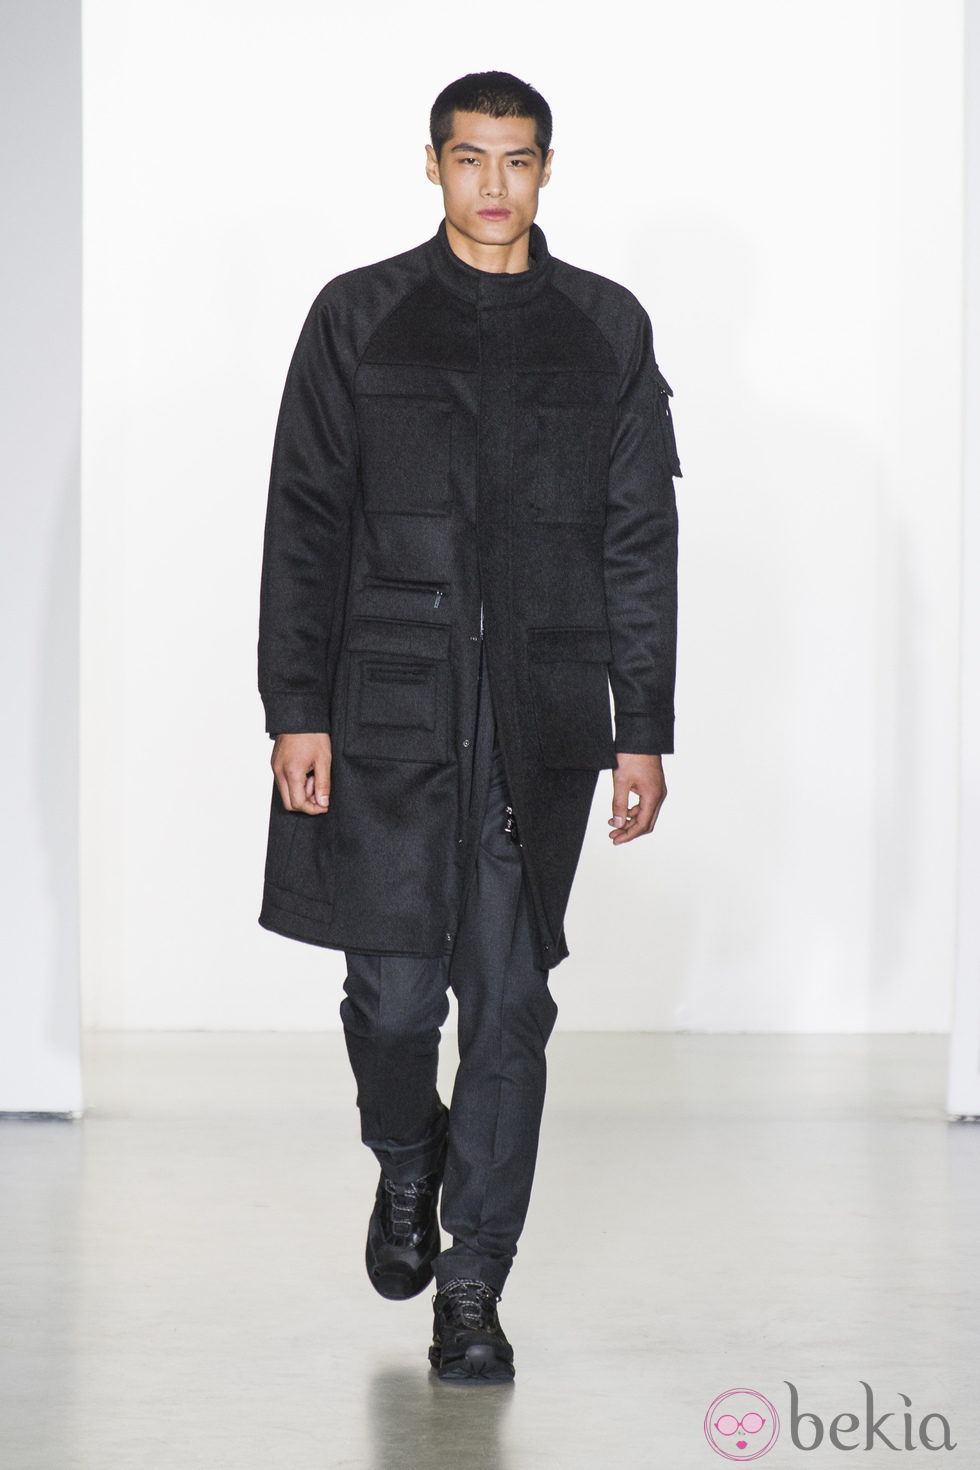 Abrigo negro con solapa de Calvin Klein para la semana de la Moda de Milán otoño/invierno 2013/2014